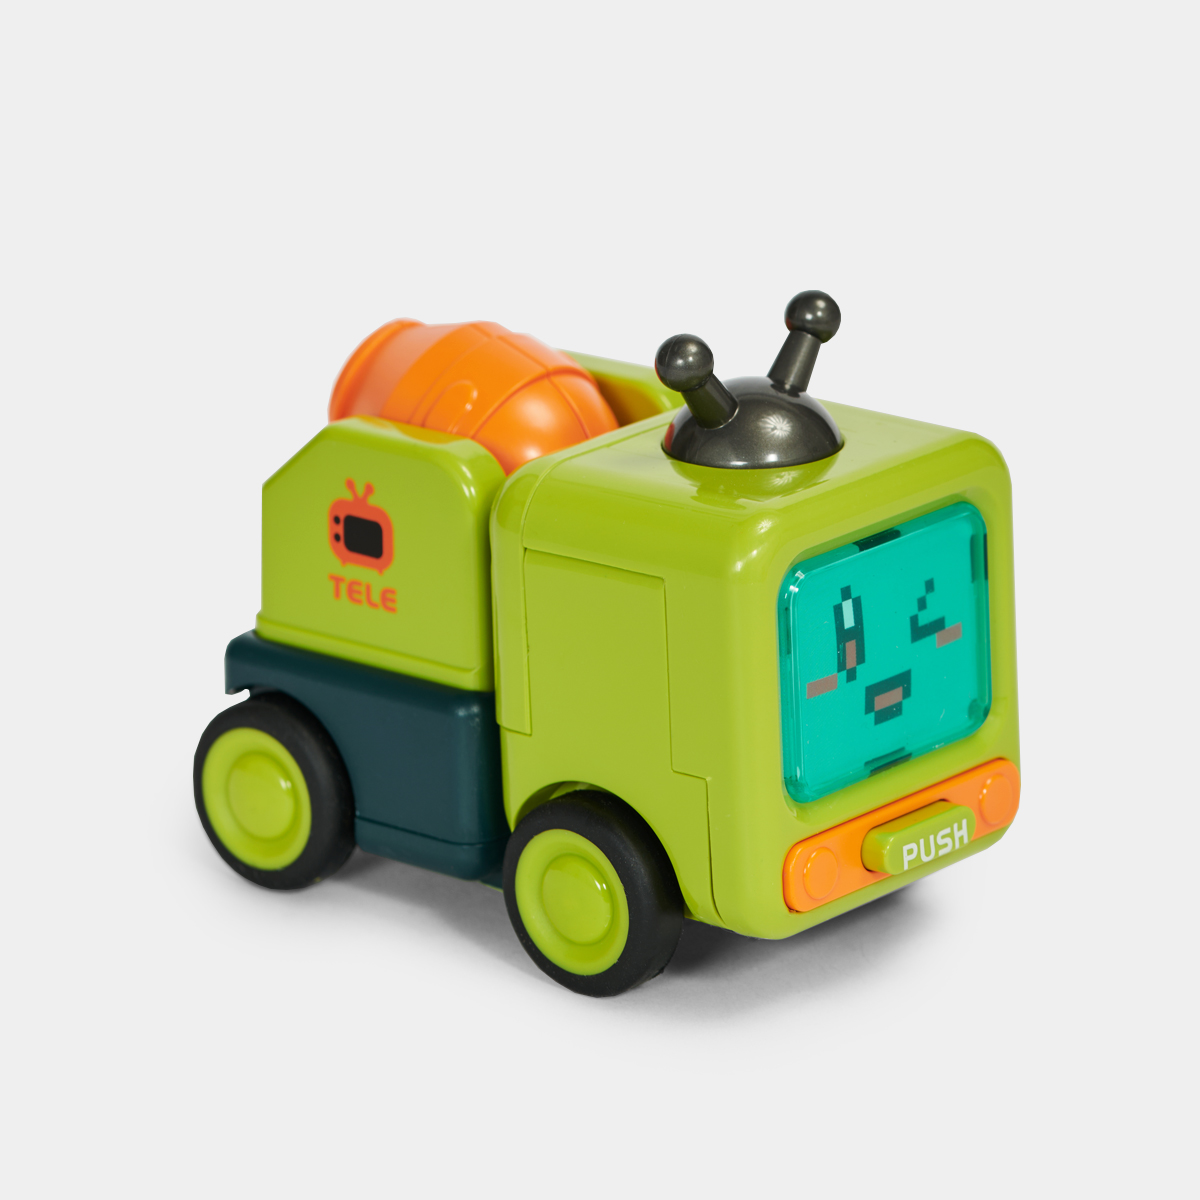 头号家!无聊了玩变形小汽车!机器人小汽车创意儿童汽车玩具礼物